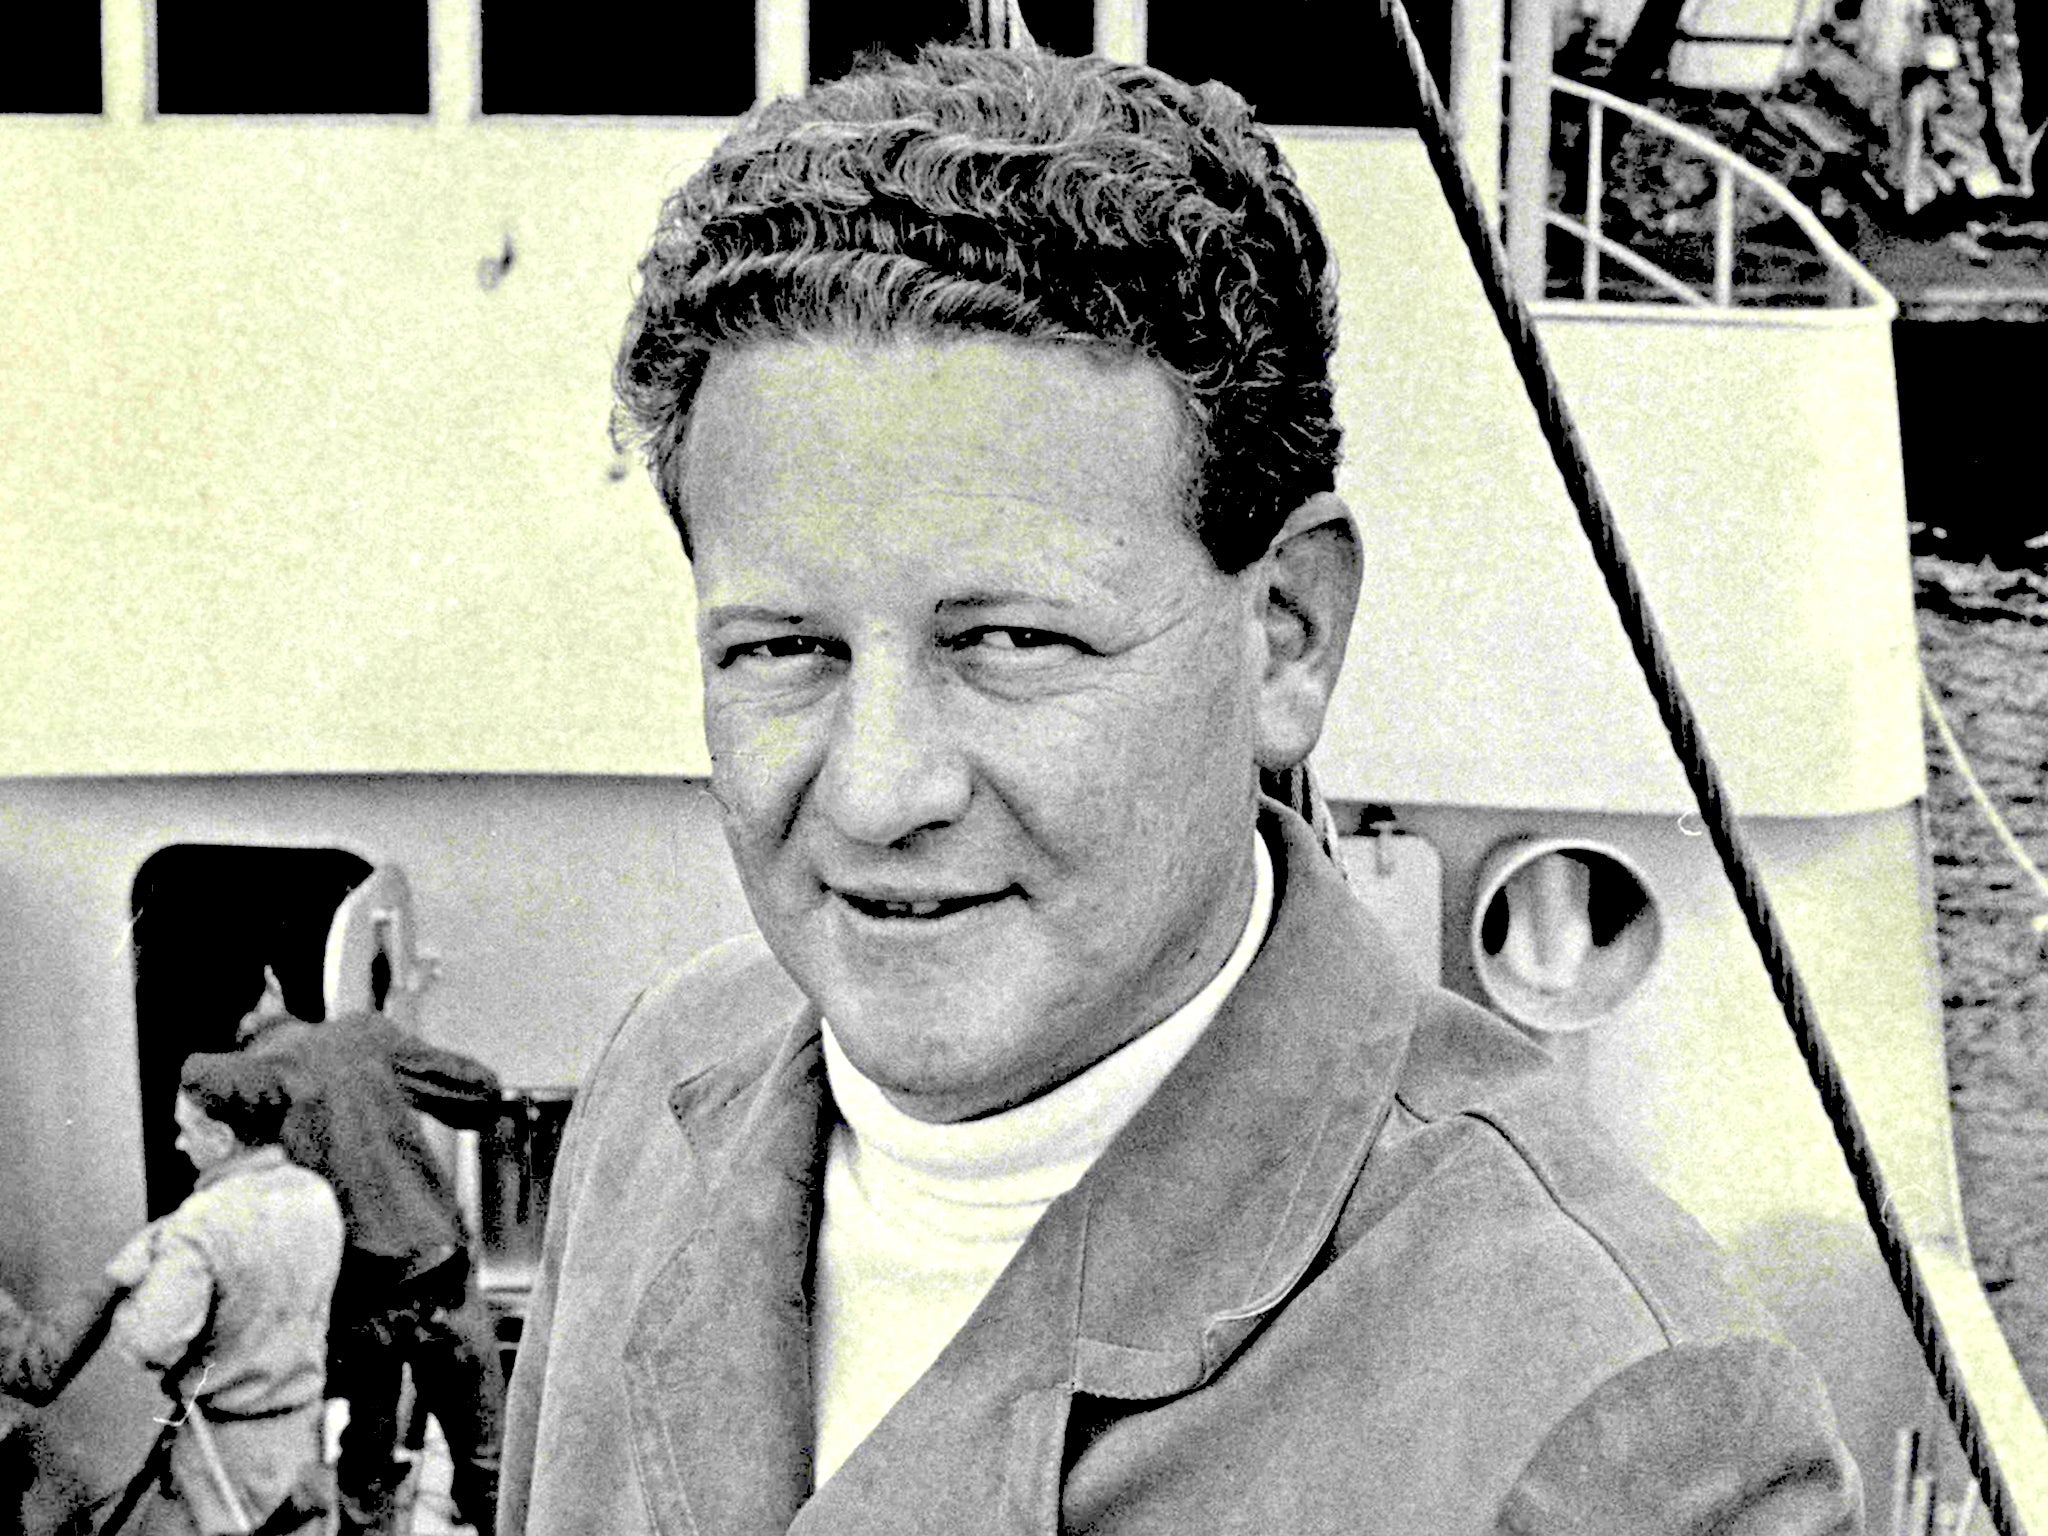 Warner aboard his fishing boat in 1967